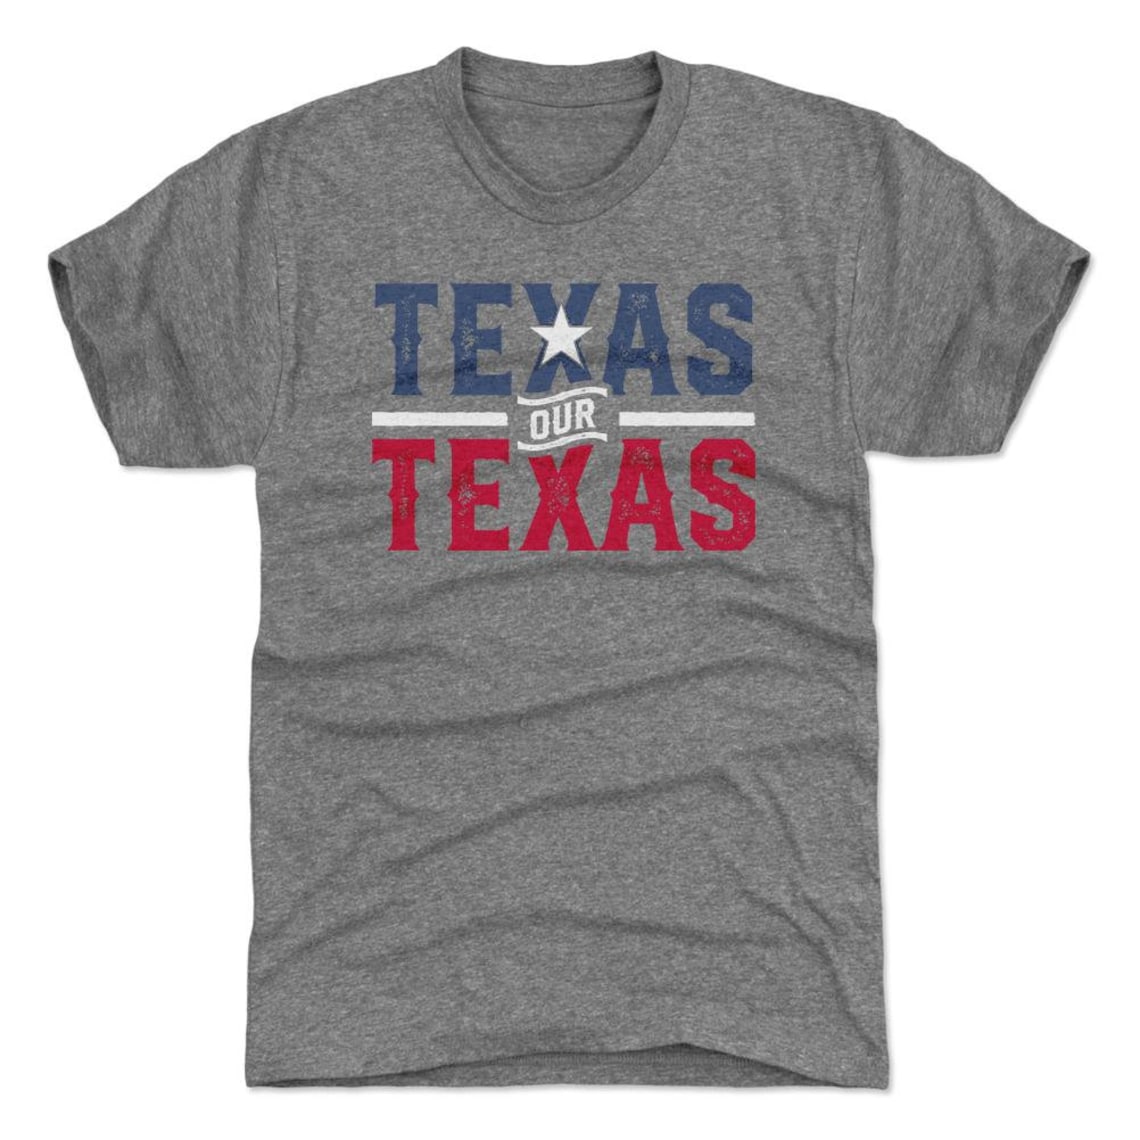 Texas Men's Premium T-shirt Texas Lifestyle Texas Our - Etsy